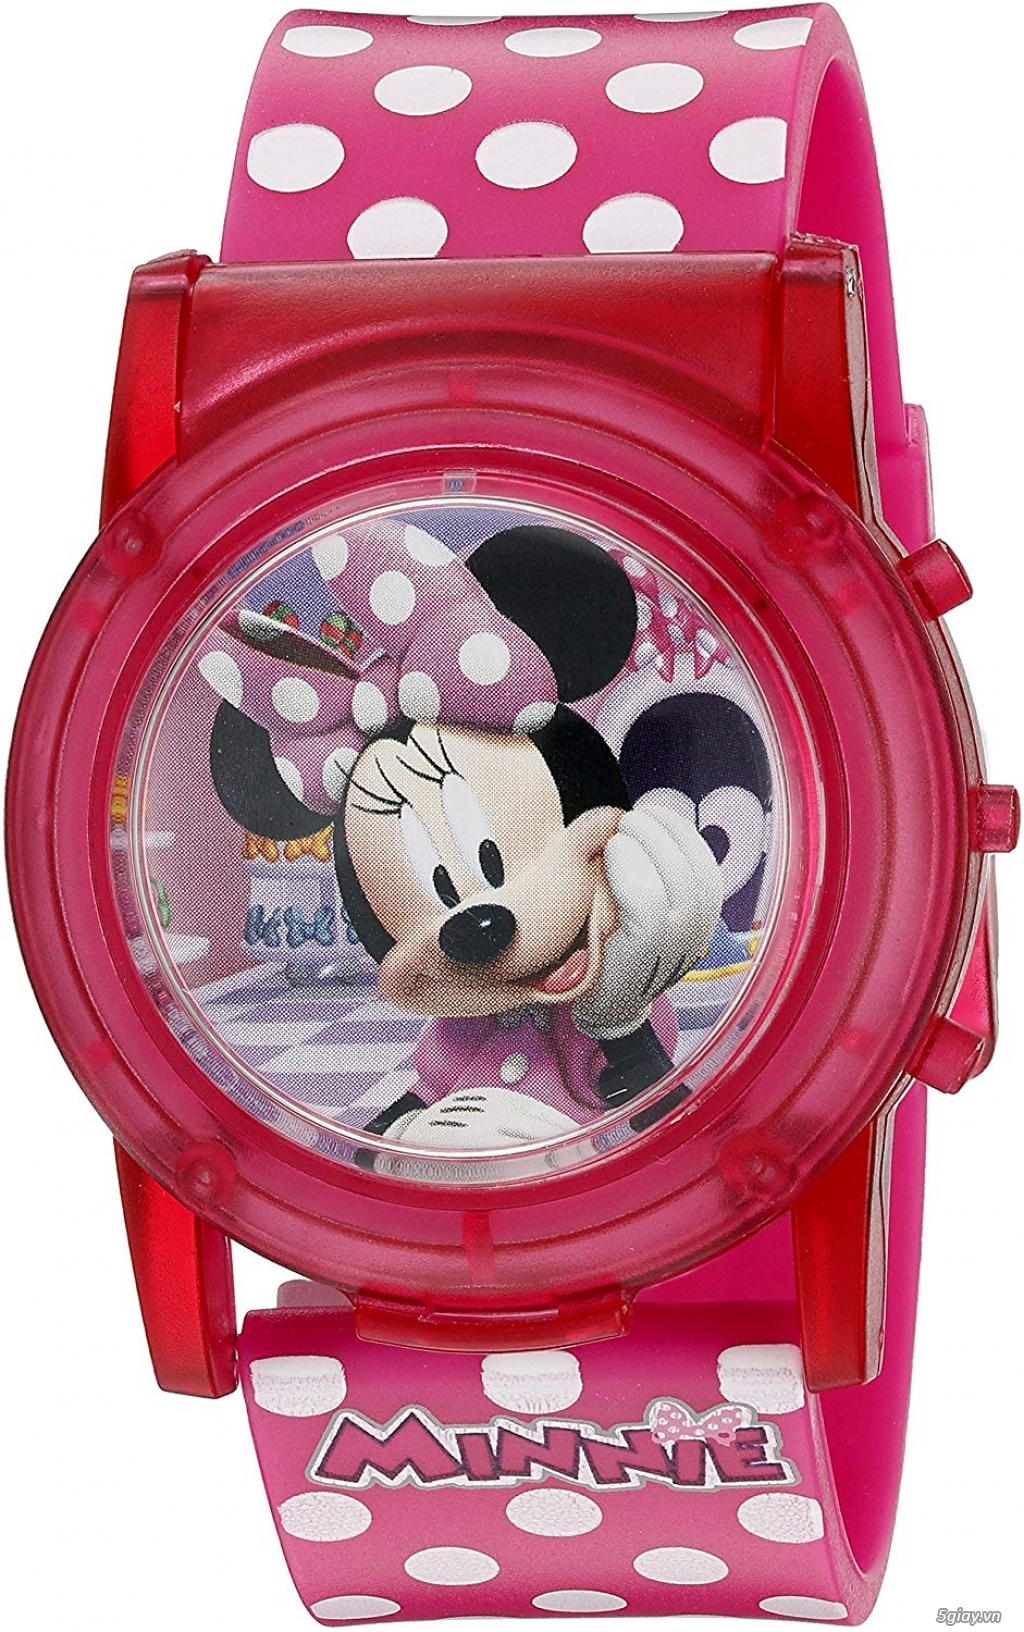 Bán đồng hồ chính hãng Disney ship USA dành cho bé gái - 3